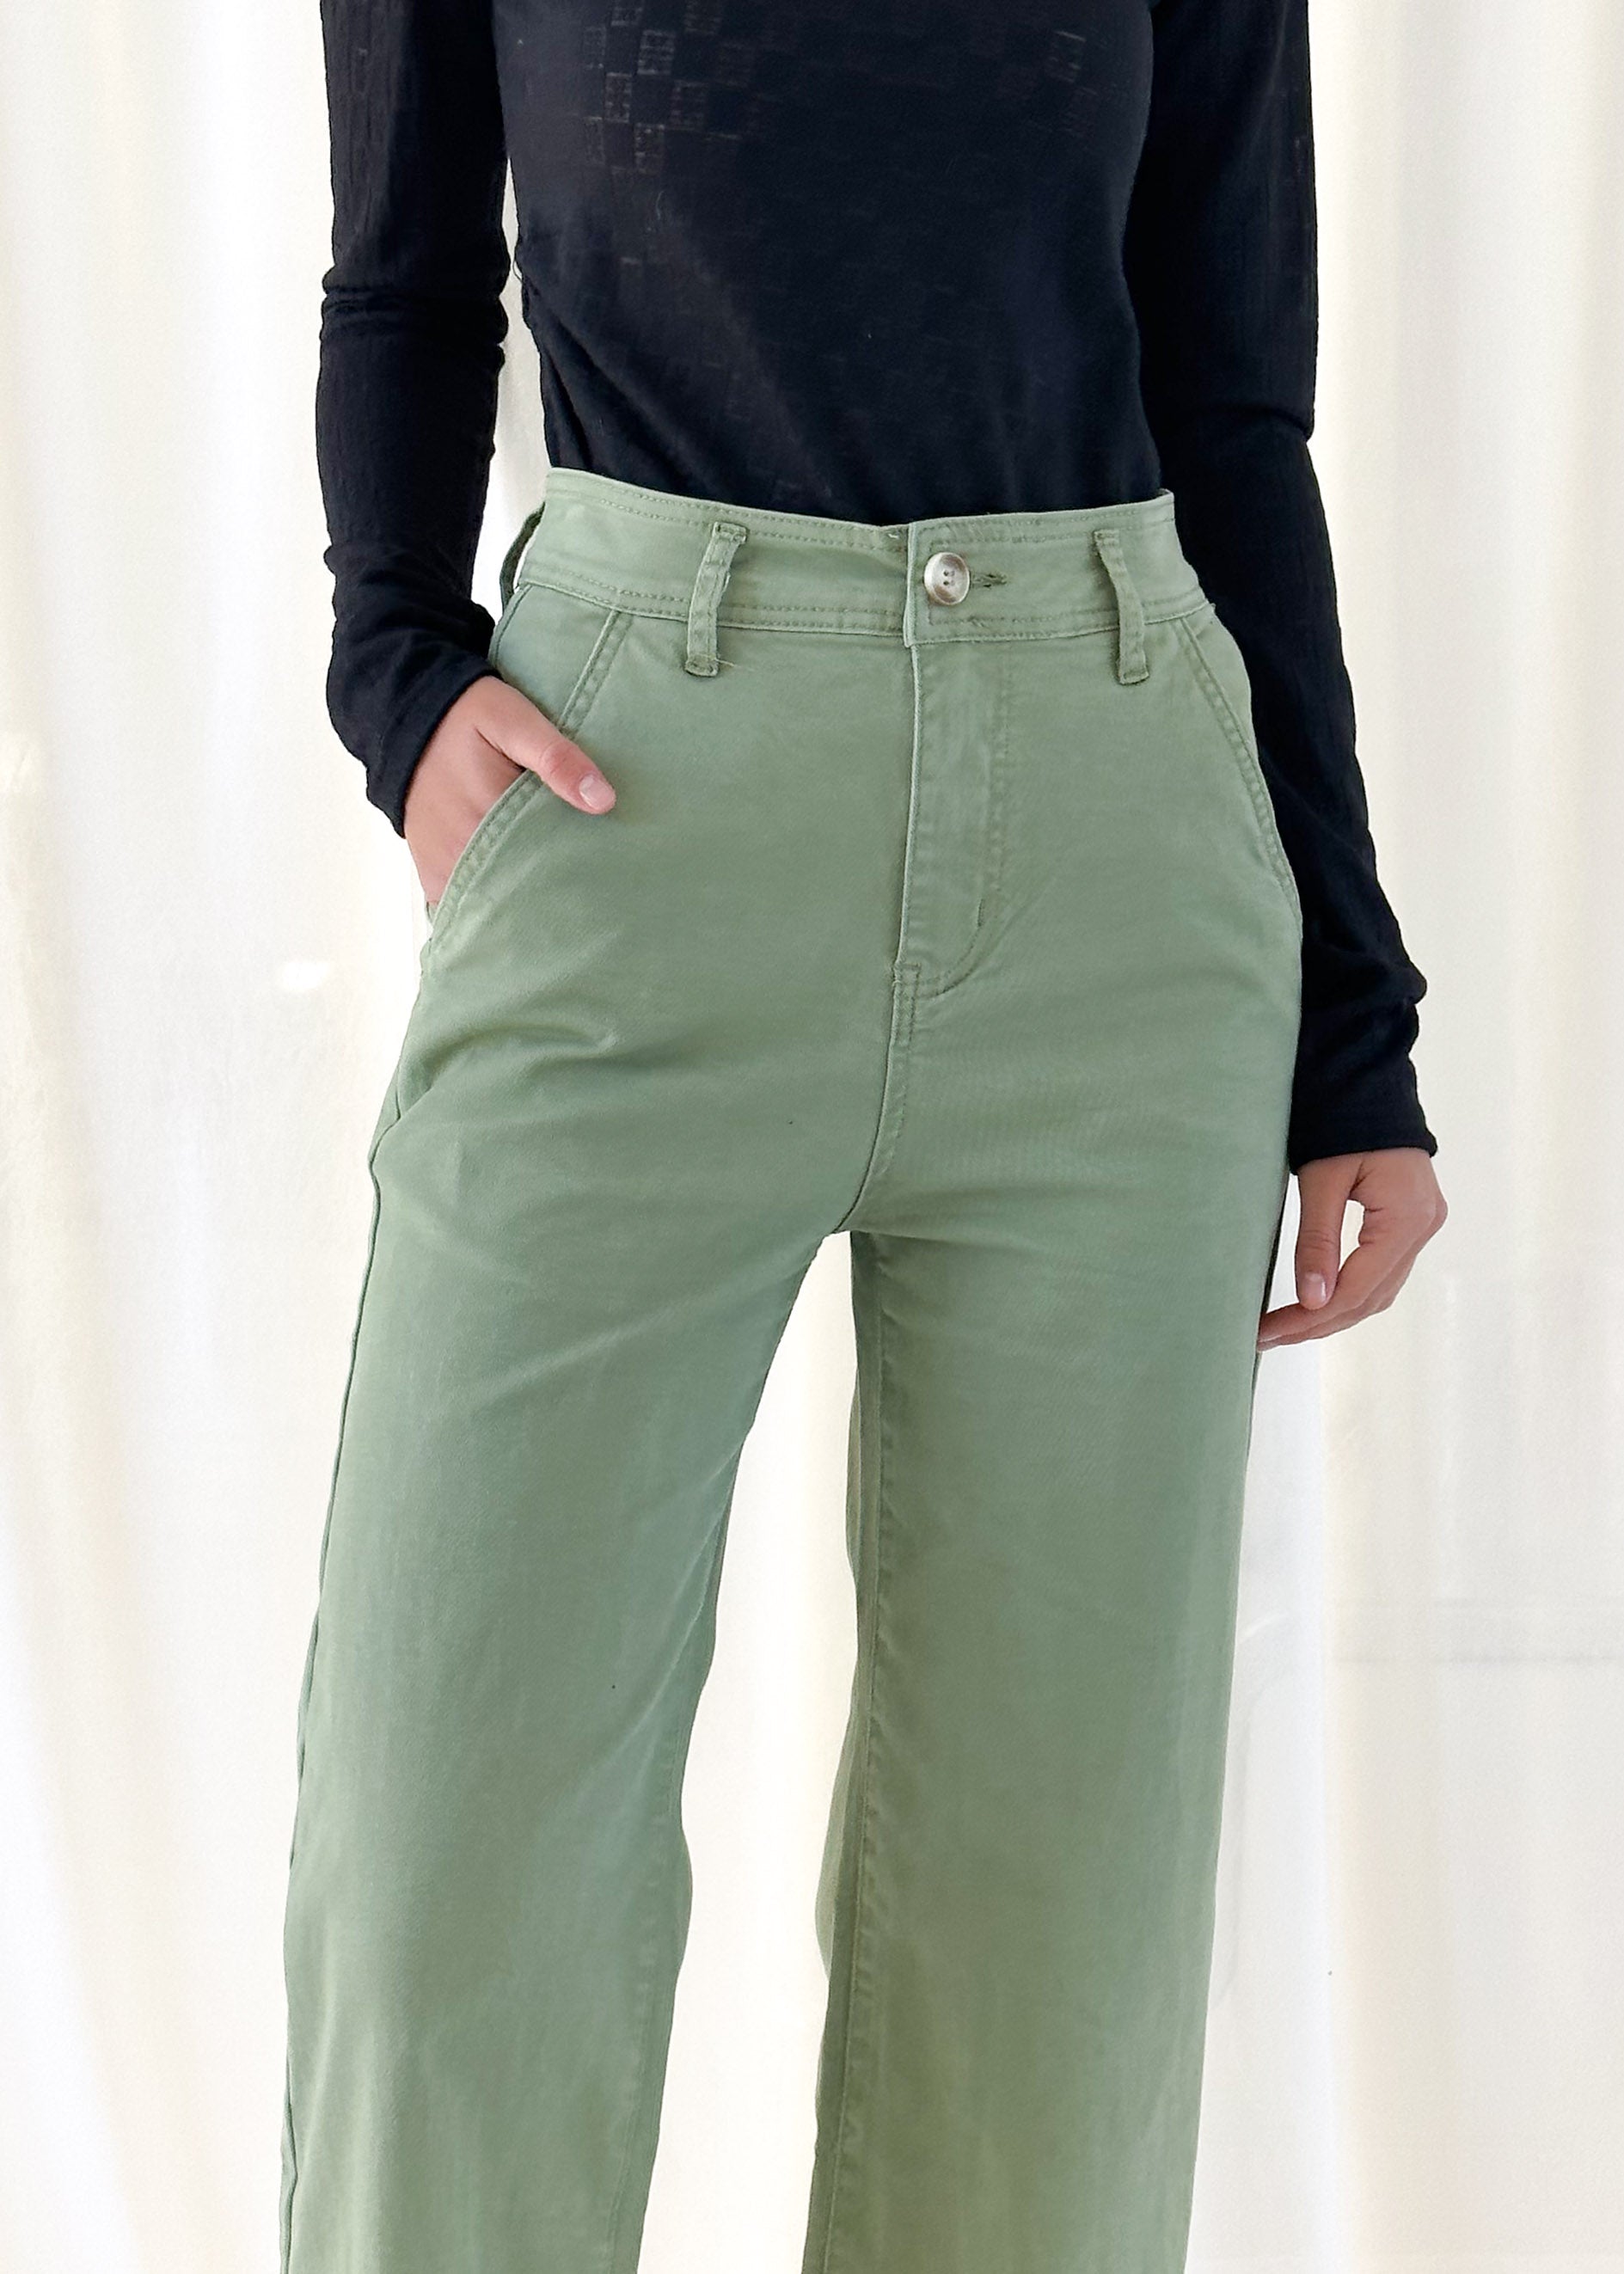 Addie Stretch Jeans - Khaki